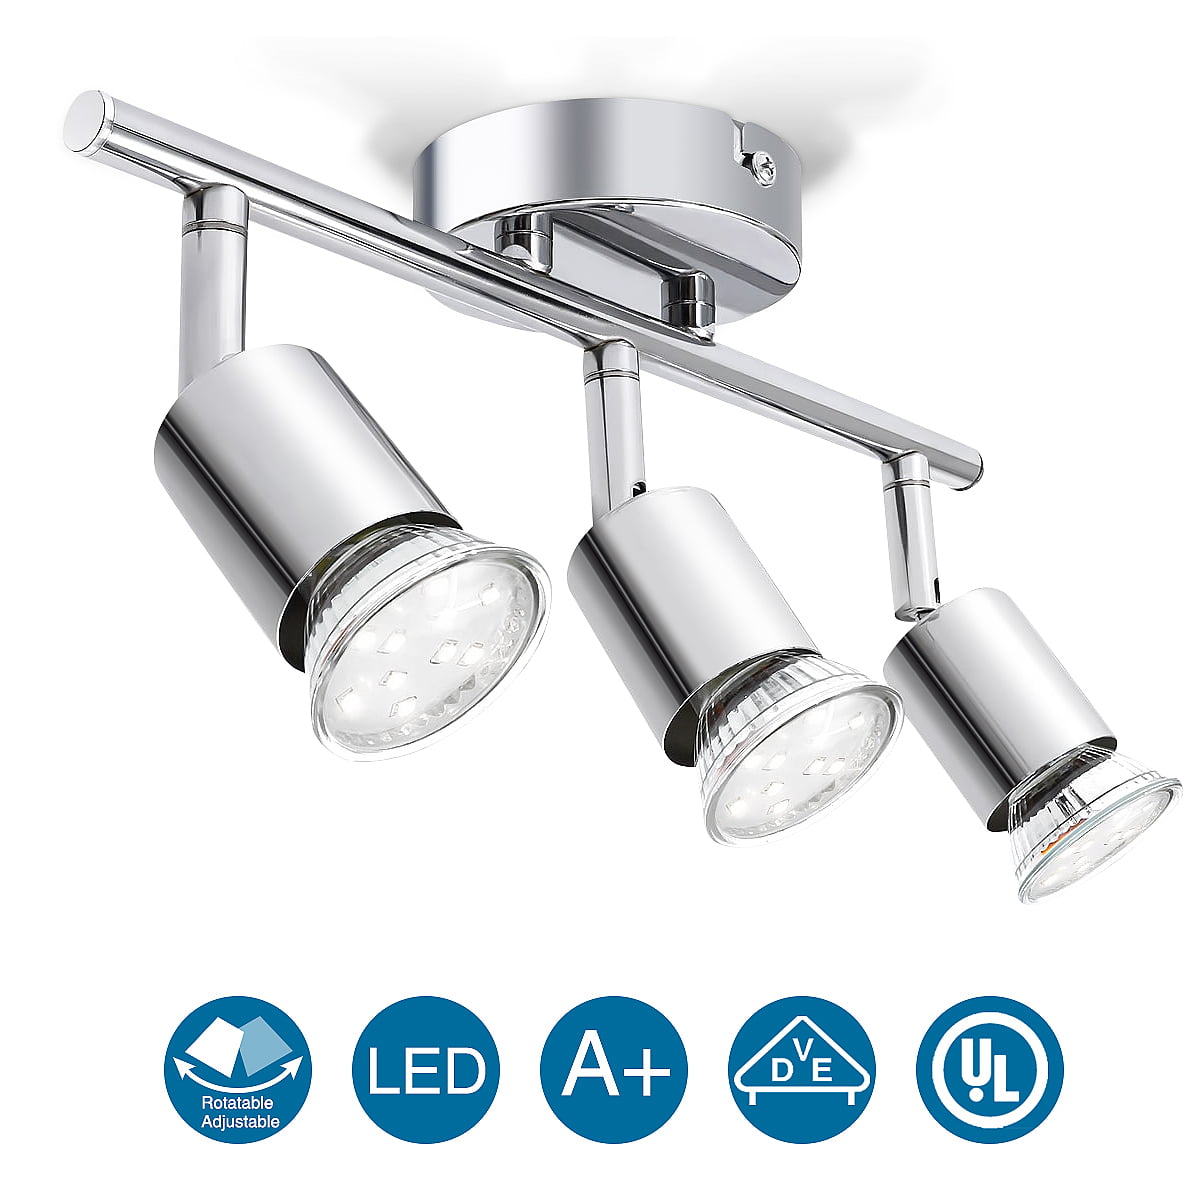 Adjust GU10 Light Fitting LED Spotlight 4 Way Adjustable Wall Ceiling Spot Light 